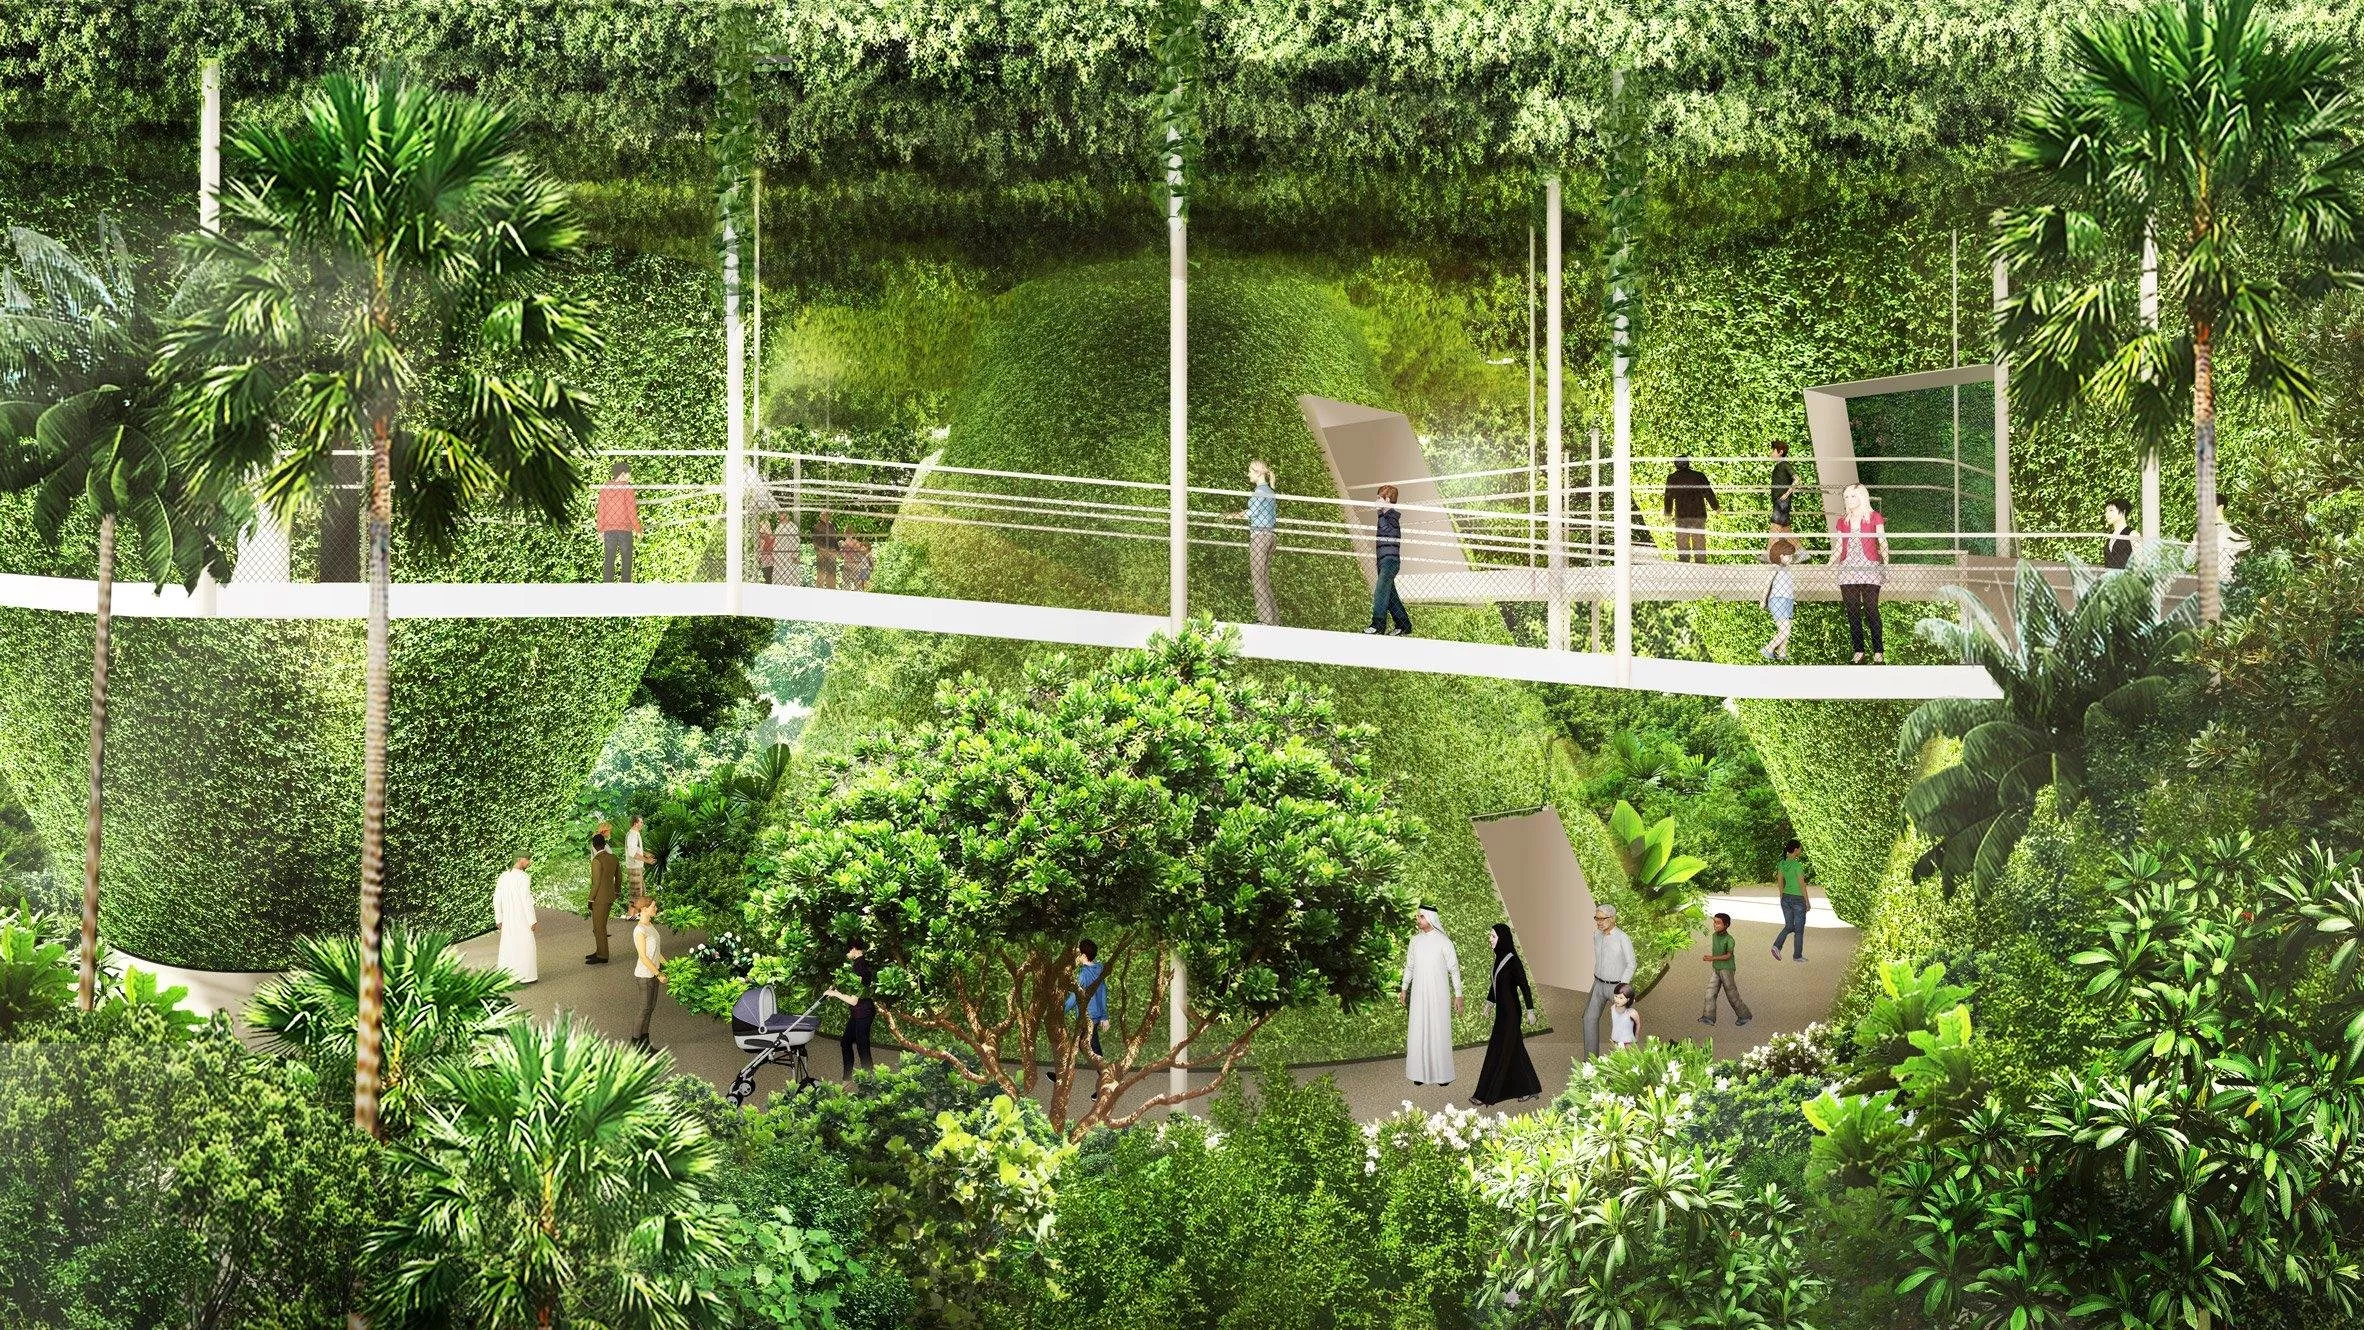 جناح سنغافورة في اكسبو دبي 2020... مدينة في حديقة خضراء